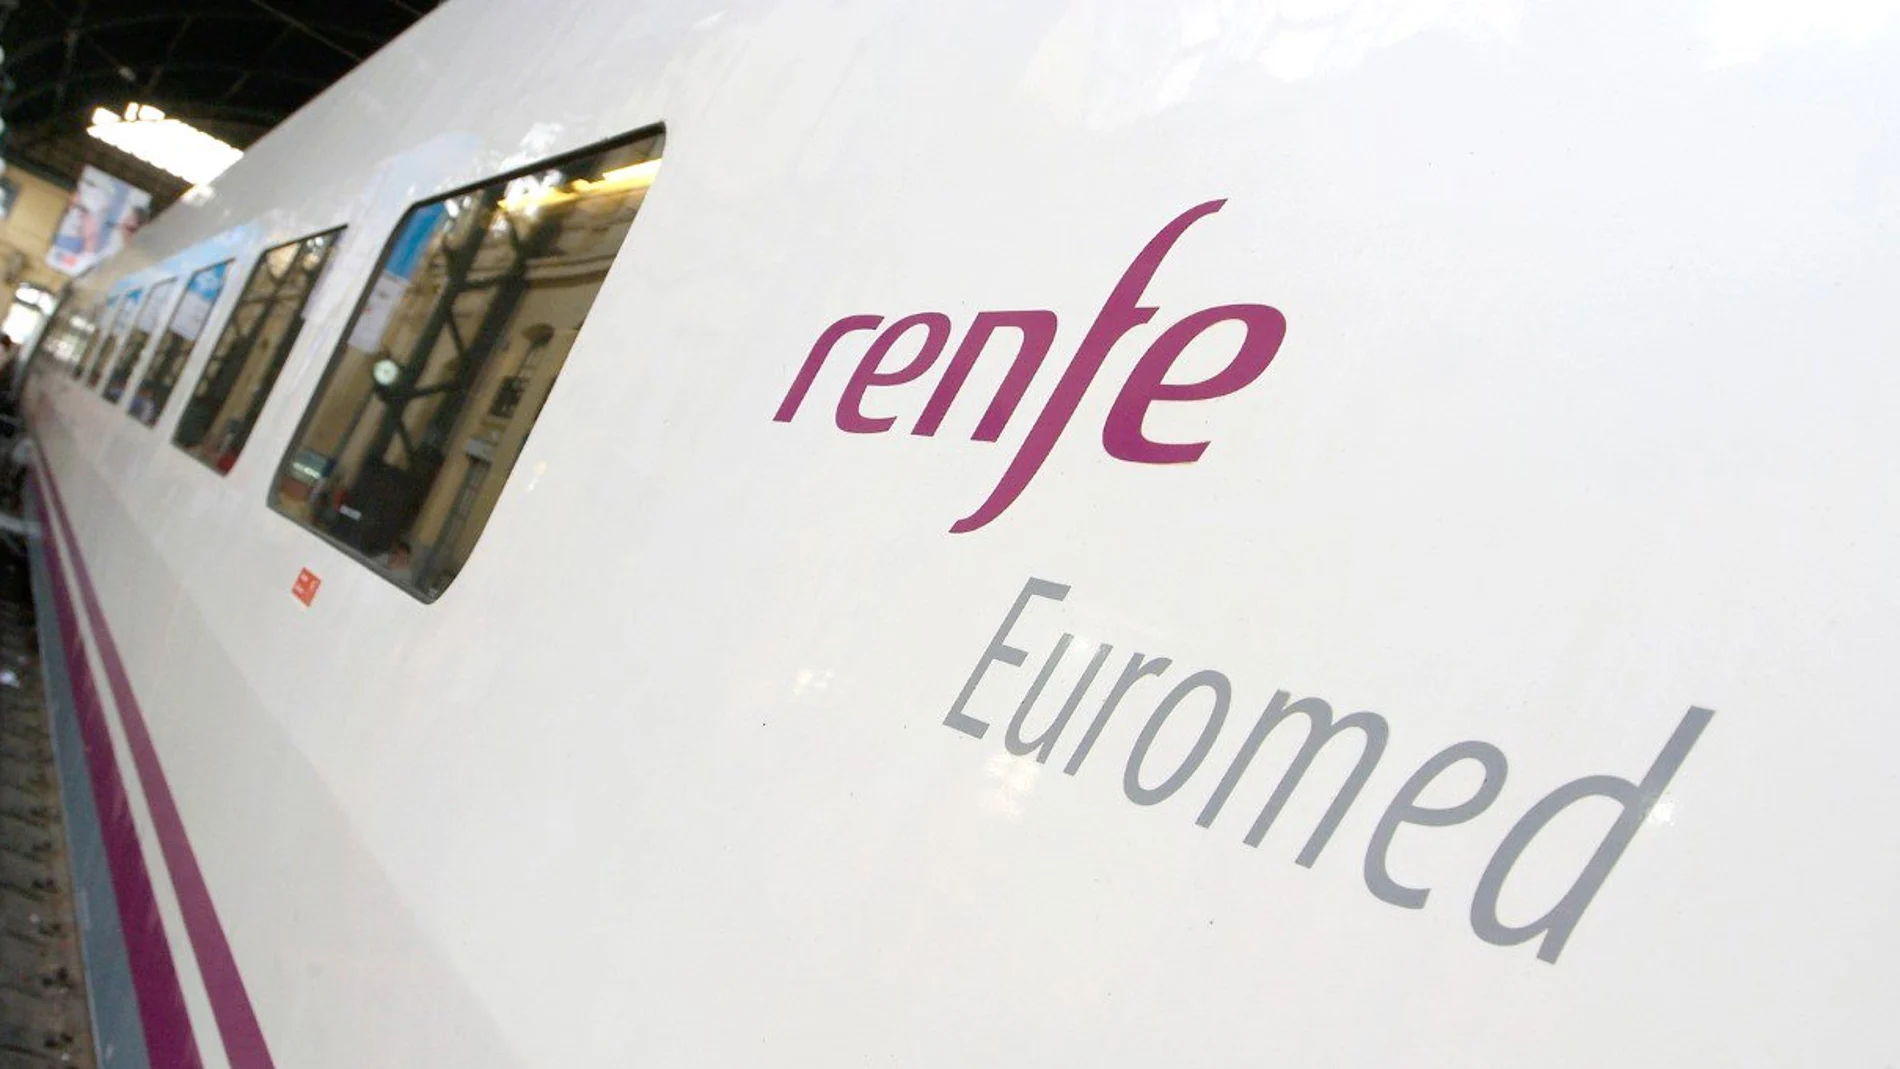 Renfe aumenta la programación de trenes con un nuevo servicio Euromed diario entre Valencia y Barcelona